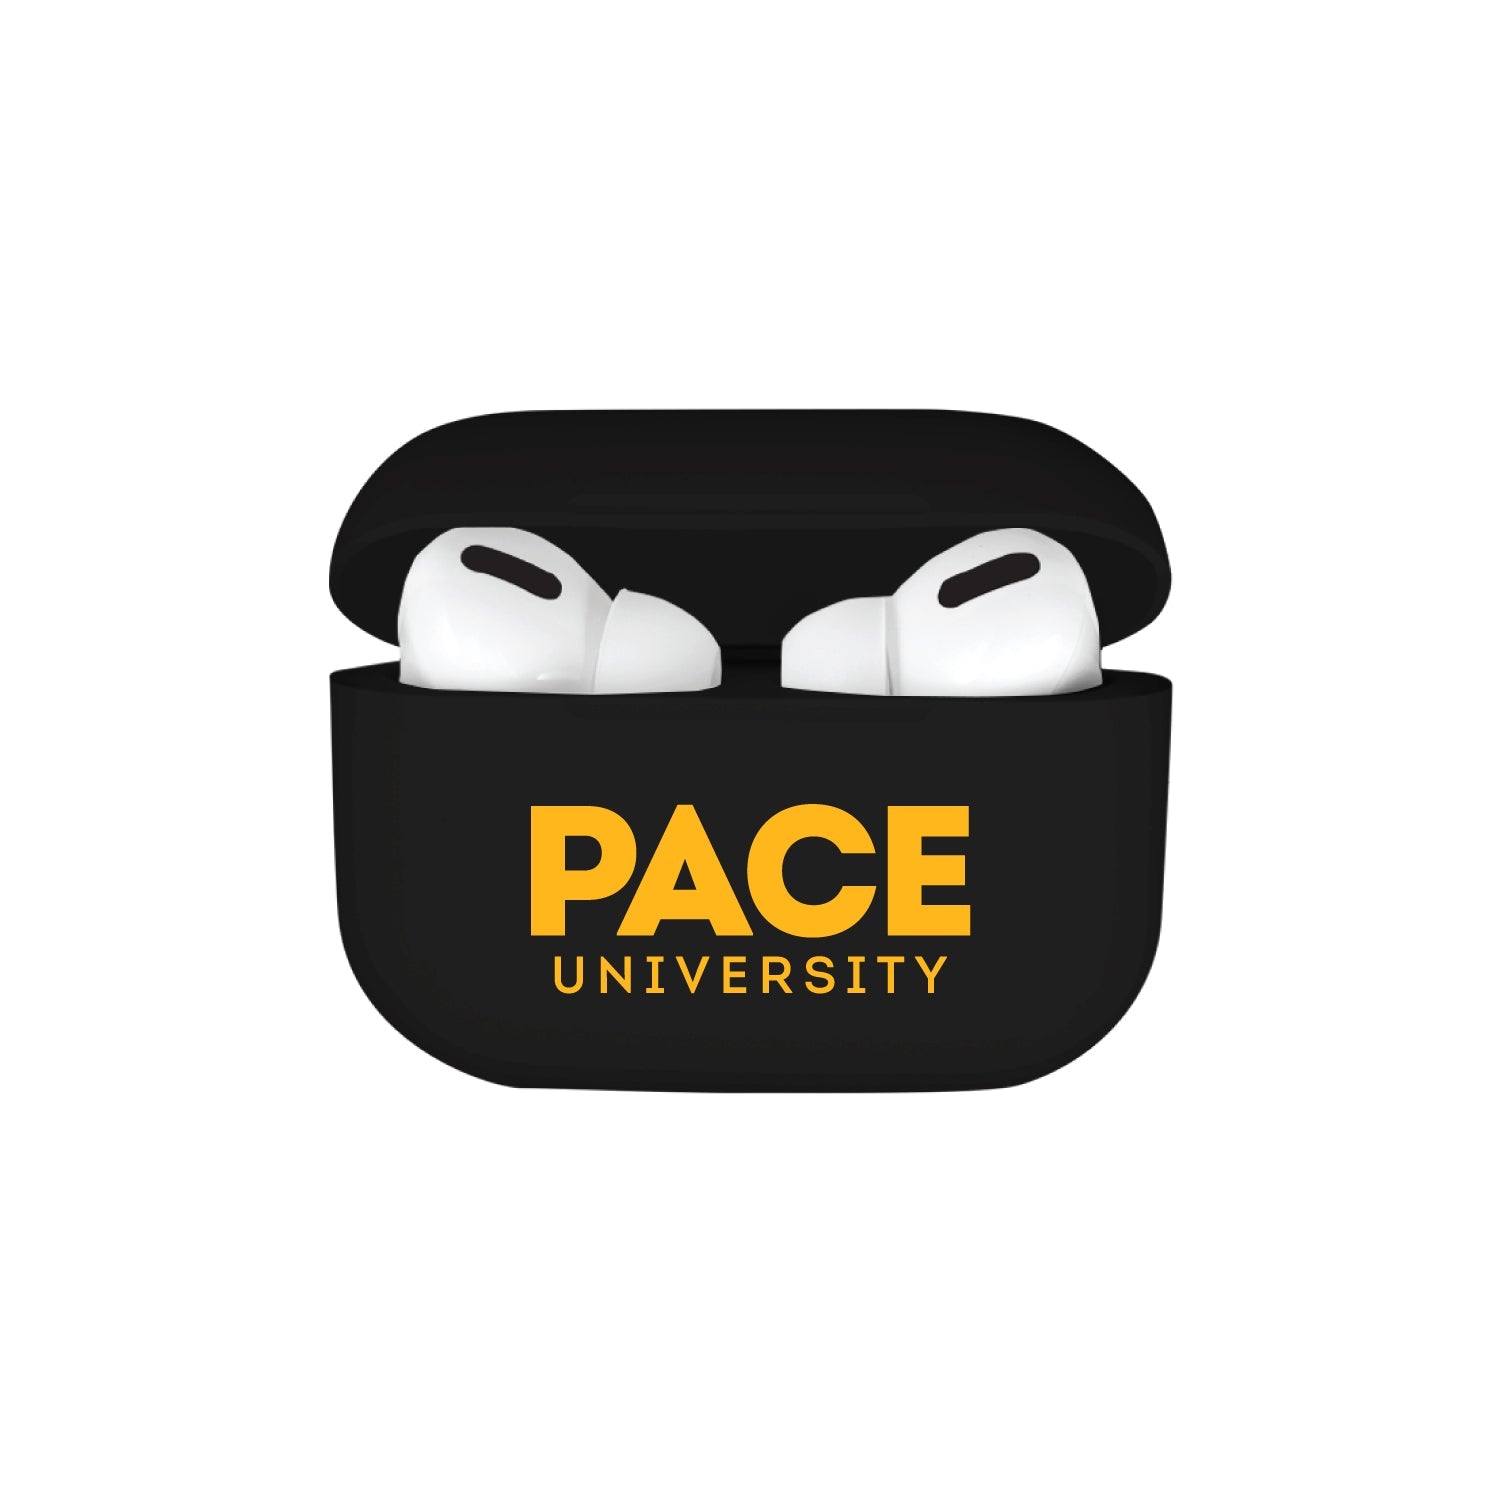 TPU Airpod Case, Pace University